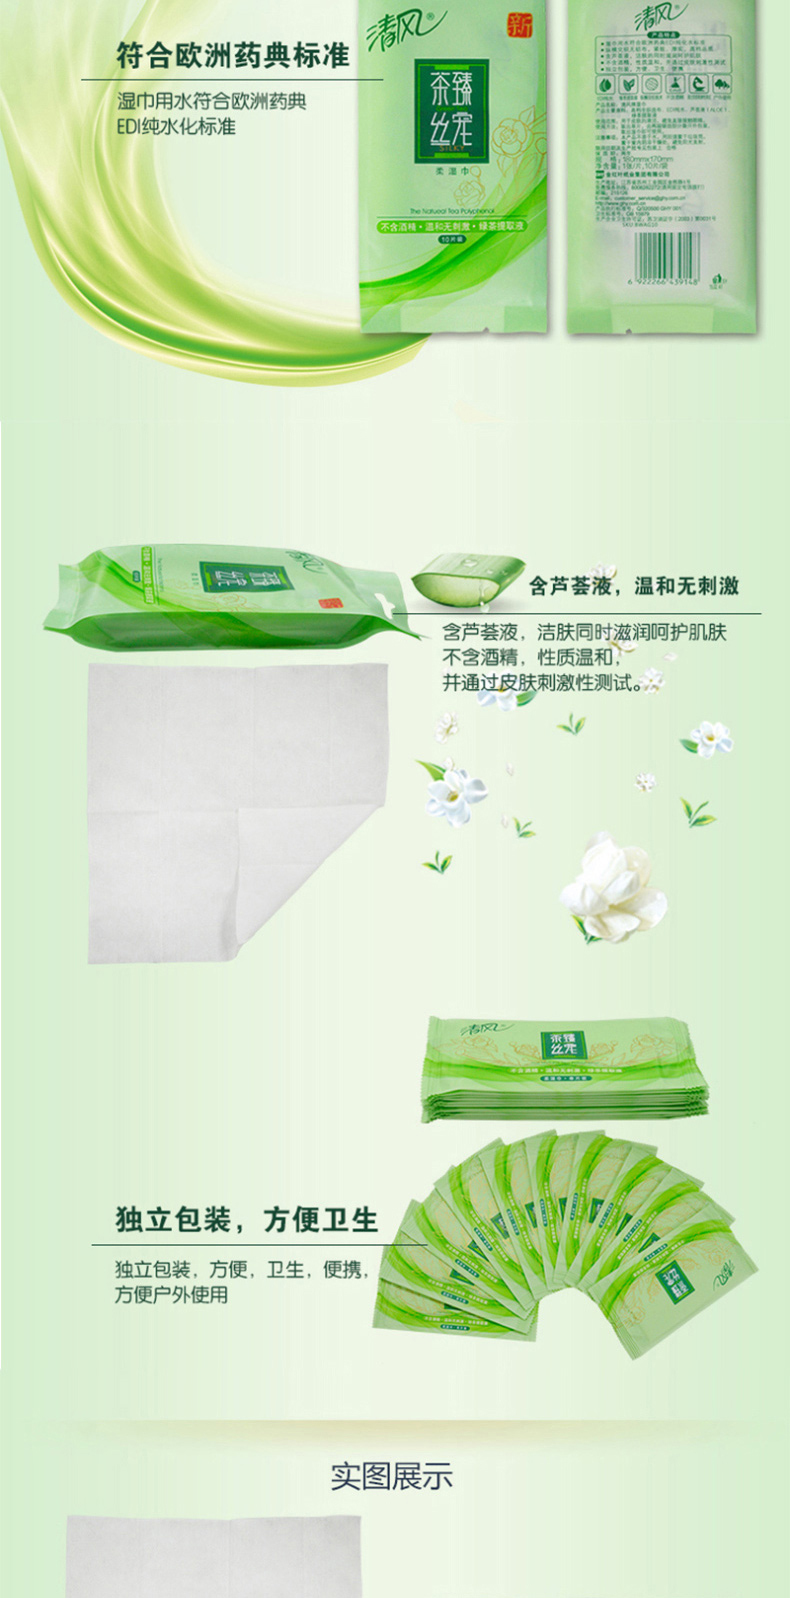 清风 Breeze 湿纸巾 180mm*170mm 10片/包 茶臻丝宠